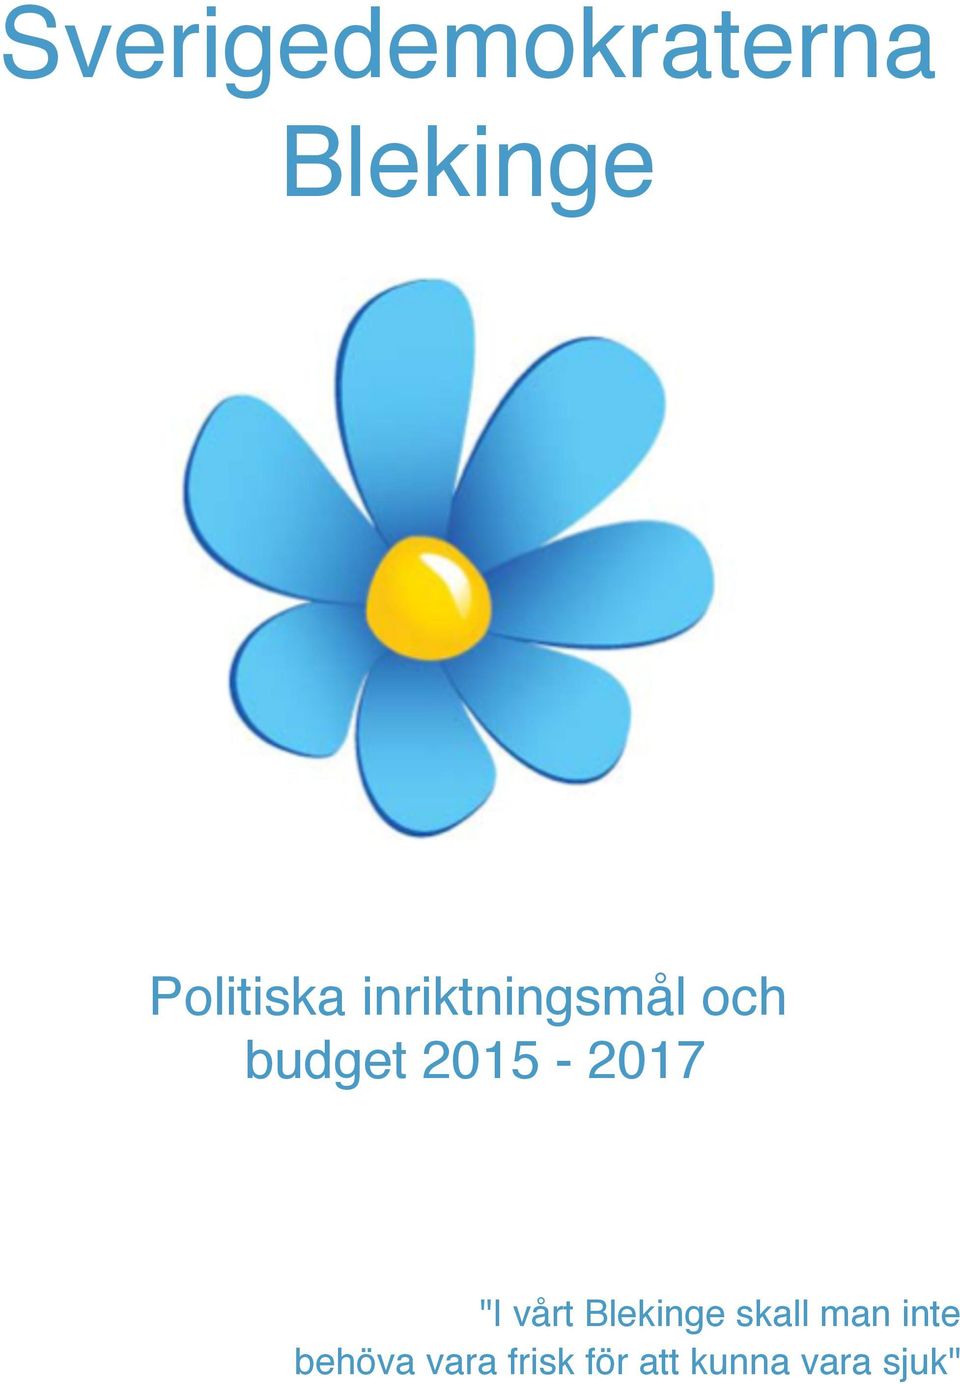 2015-2017 "I vårt Blekinge skall man